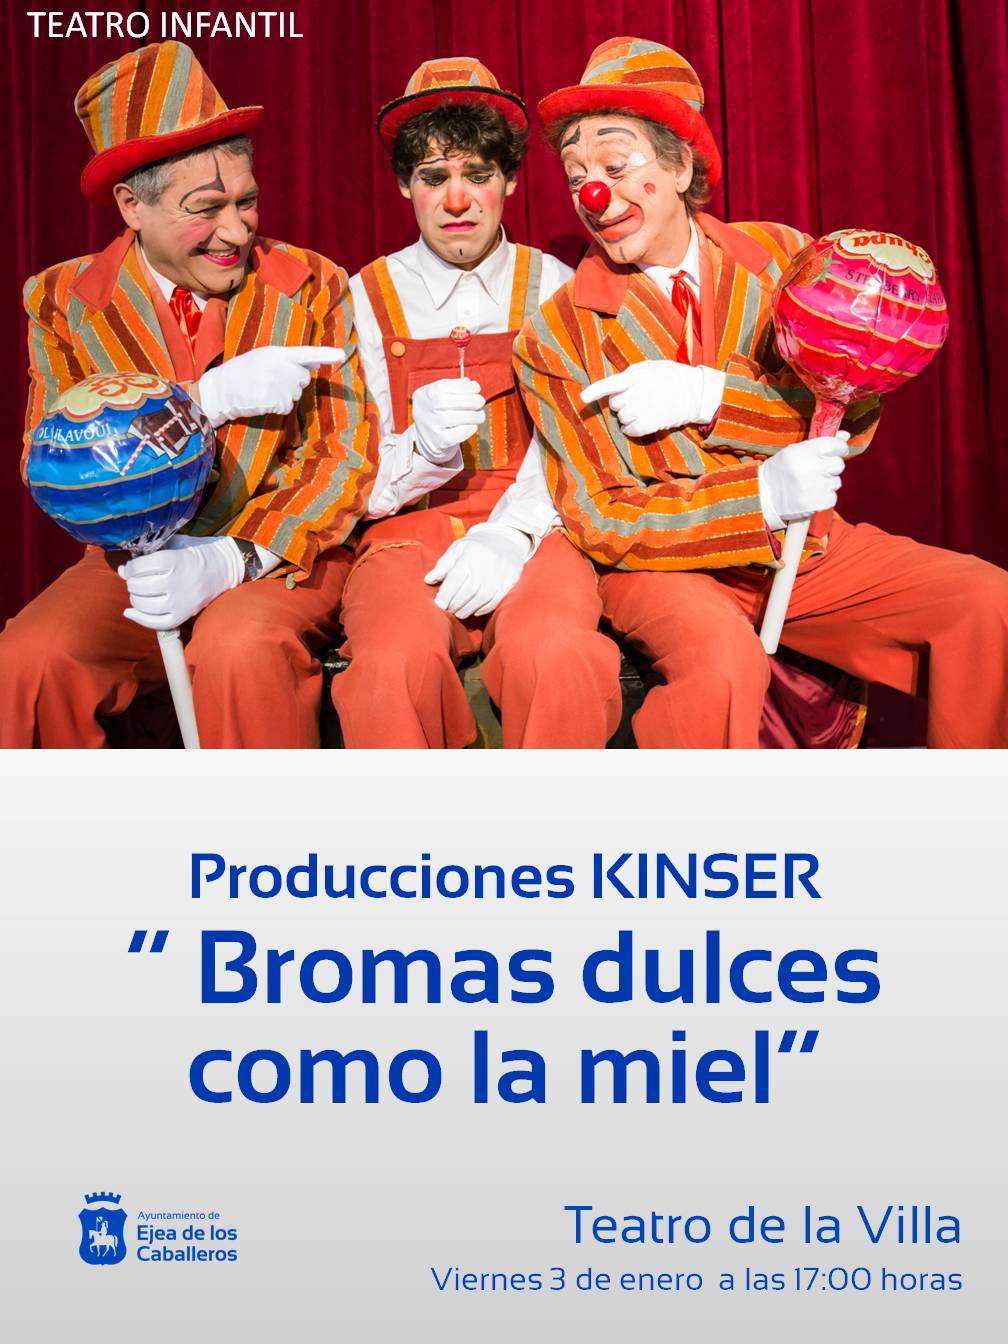 En este momento estás viendo Bromas dulces como la miel de producciones Kinser para público infantil y familiar